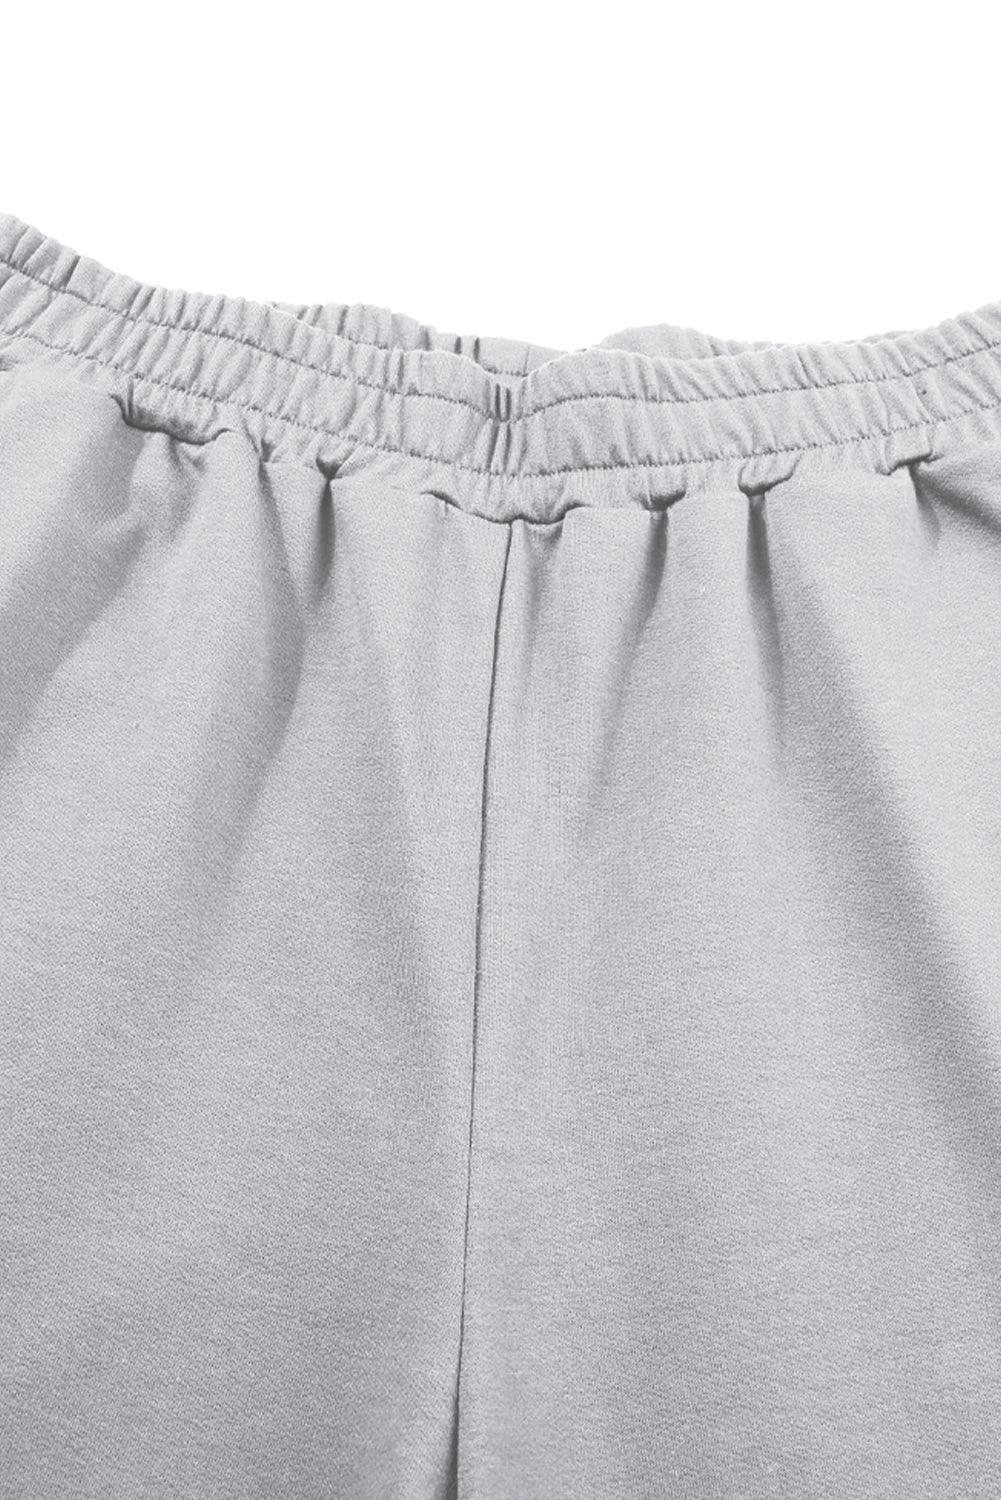 Light Grey Criss Cross Crop Top and Pants Loungewear Set